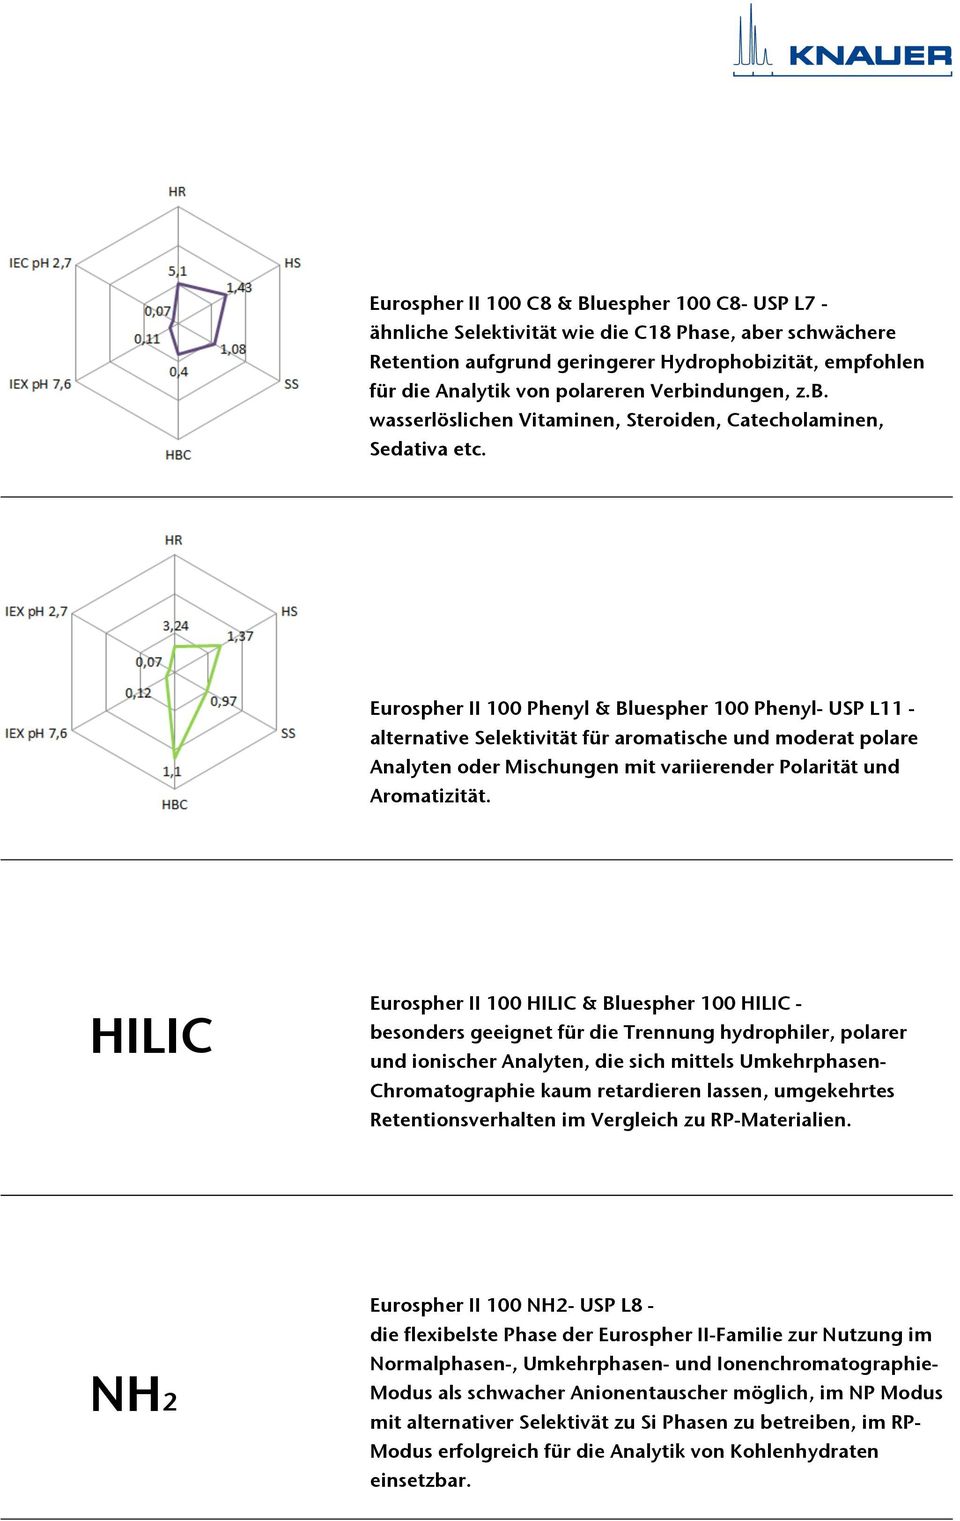 Eurospher II 100 Phenyl & Bluespher 100 Phenyl- USP L11 - alternative Selektivität für aromatische und moderat polare Analyten oder Mischungen mit variierender Polarität und Aromatizität.